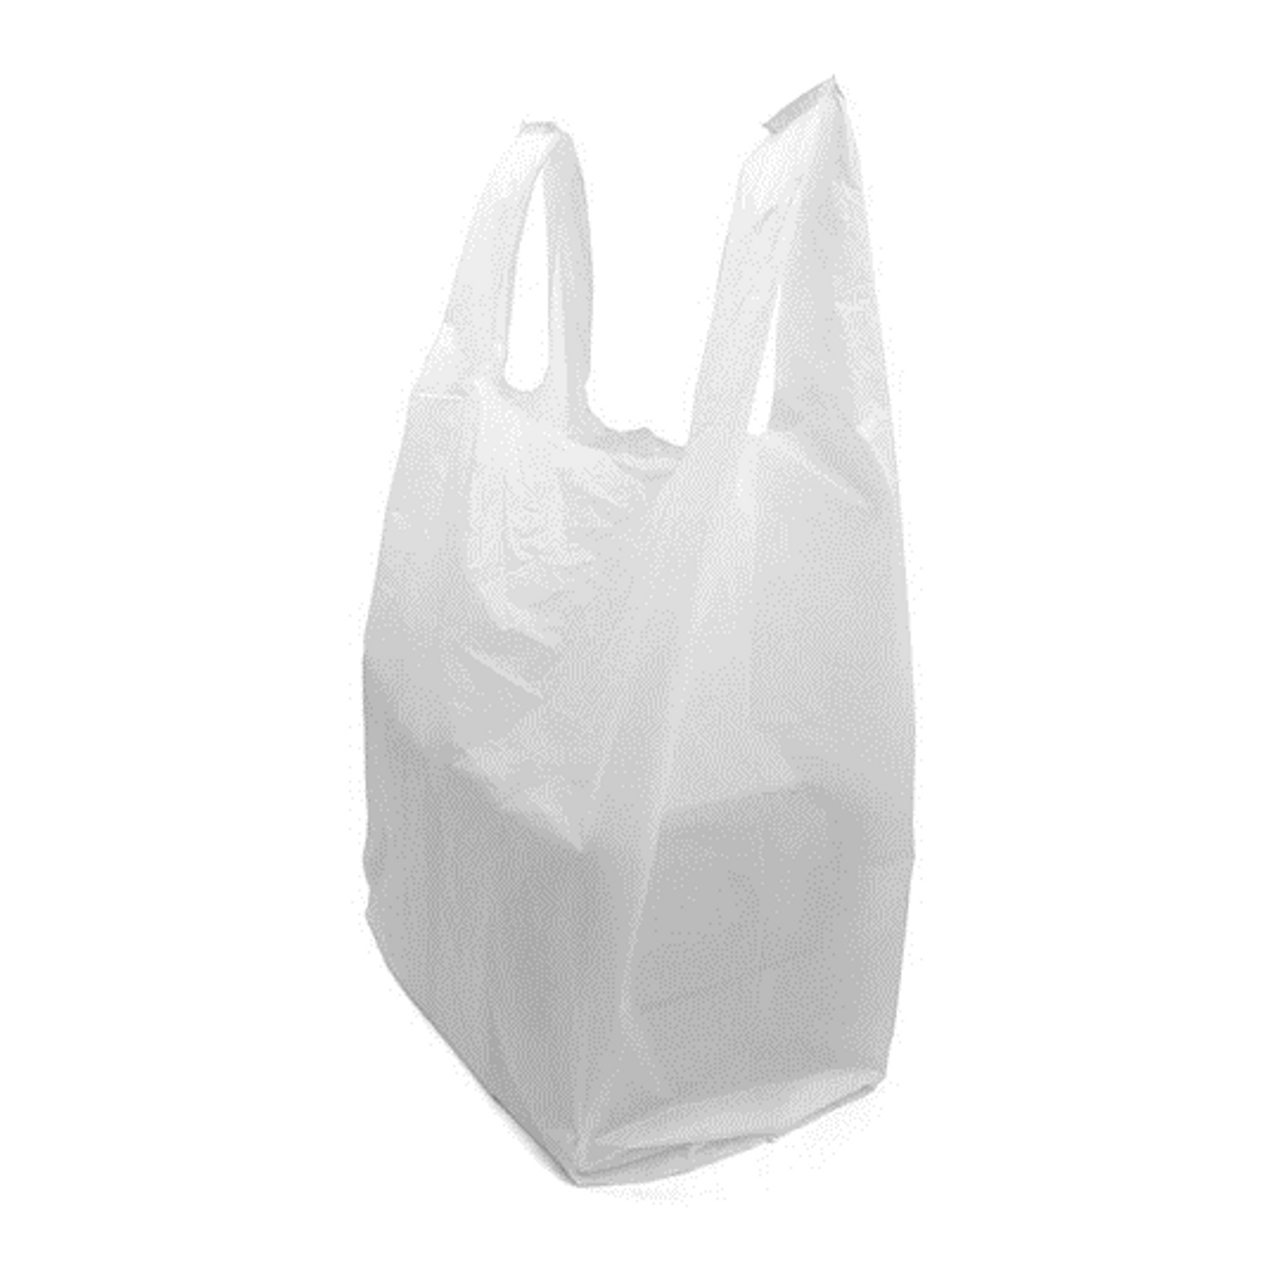 plastic tote bag